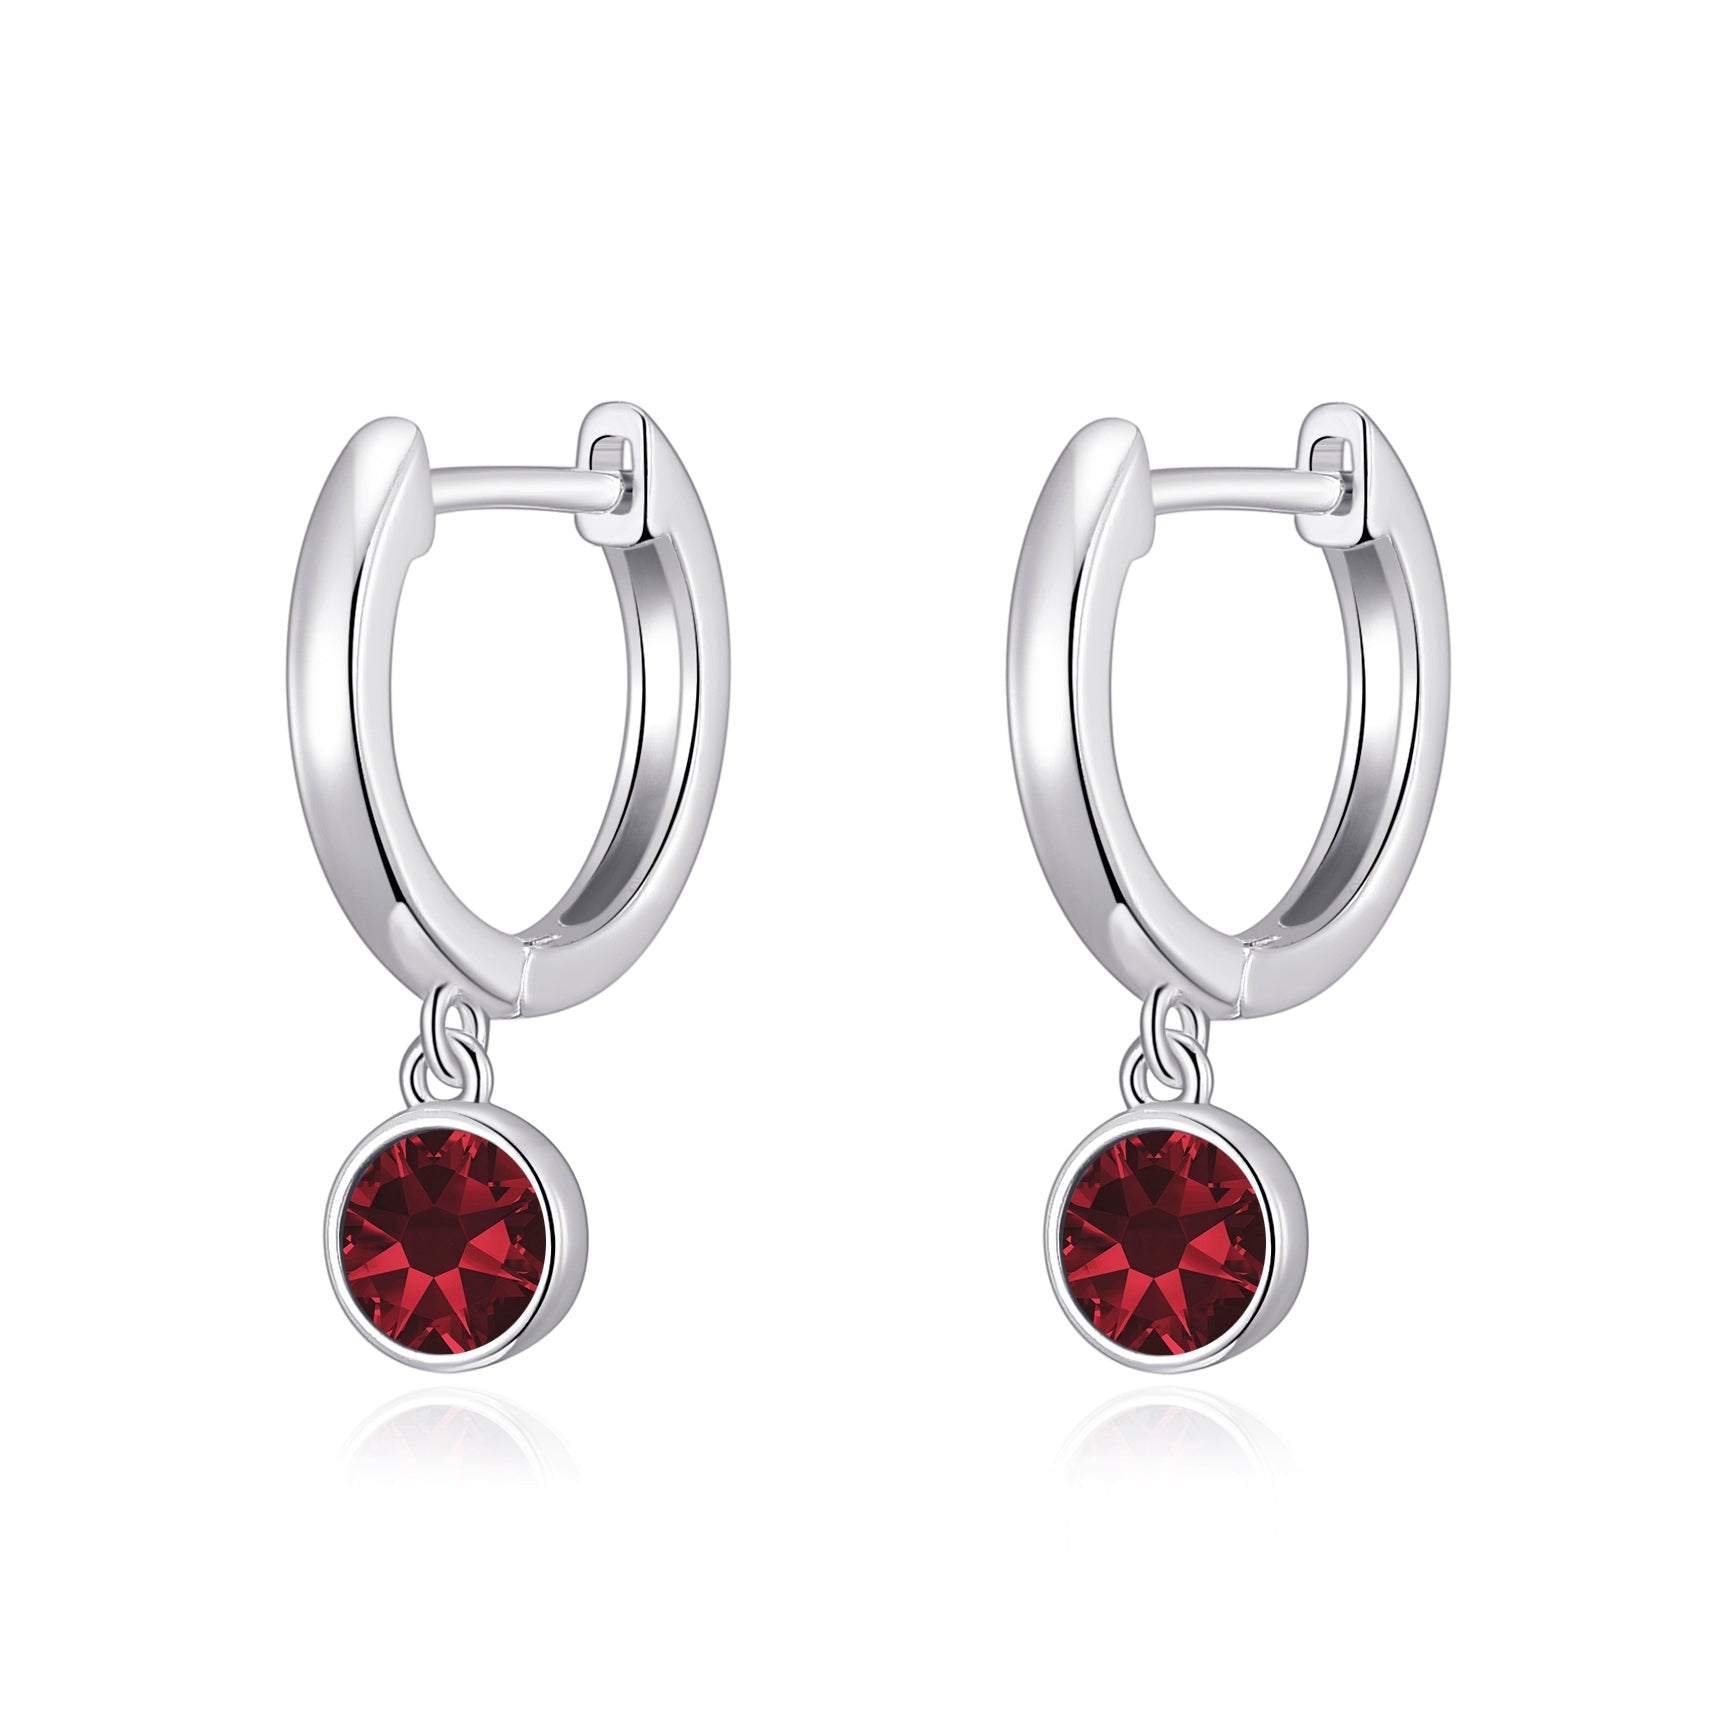 Dark Red Crystal Hoop Earrings Created with Zircondia® Crystals by Philip Jones Jewellery